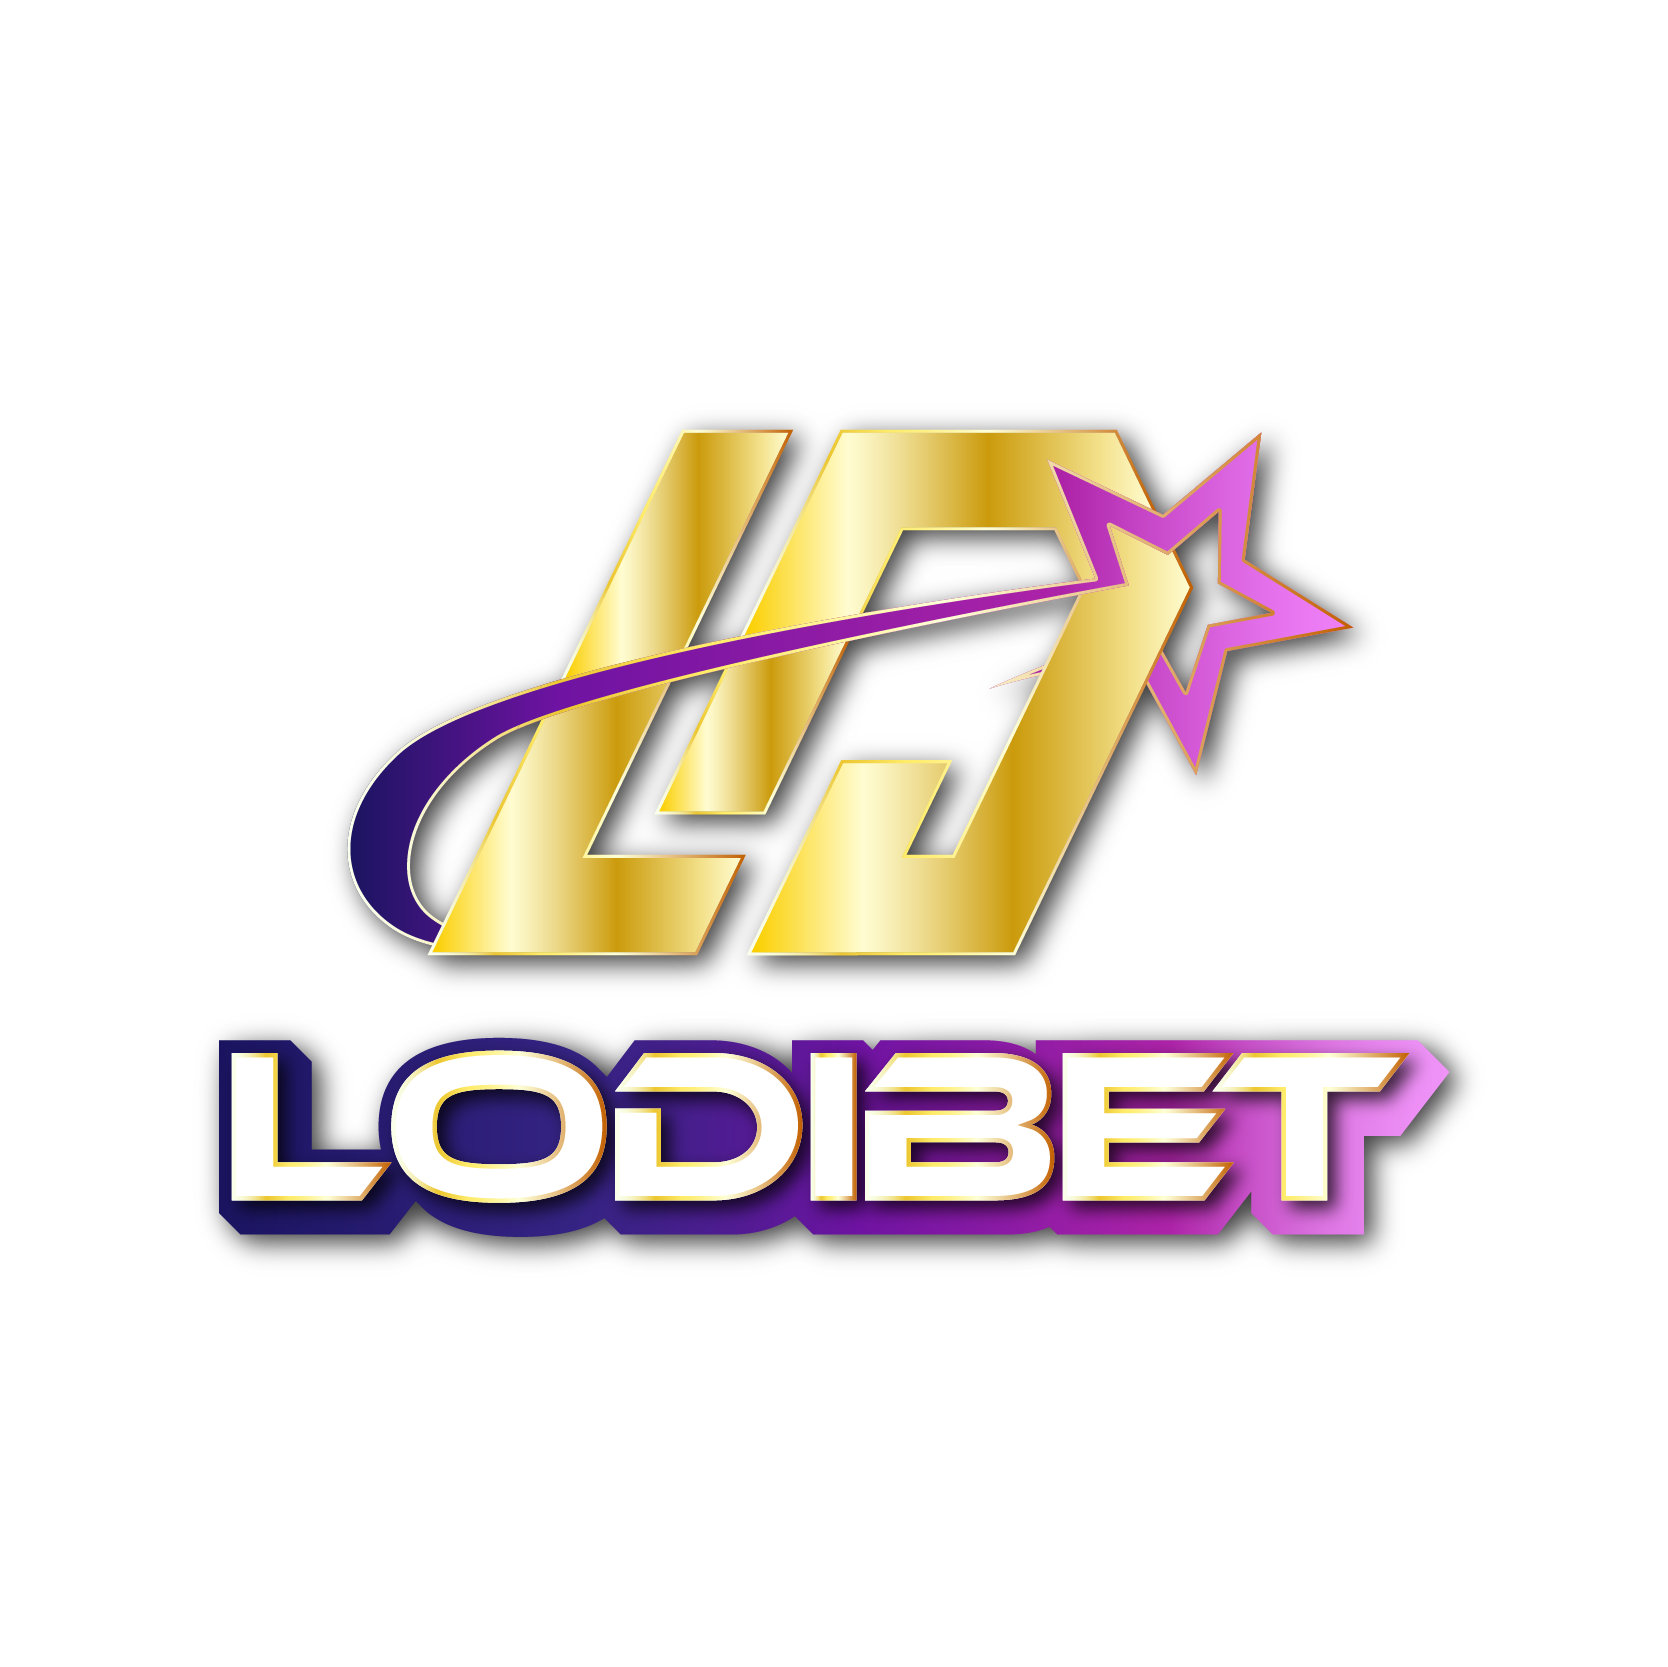 lodibet logo